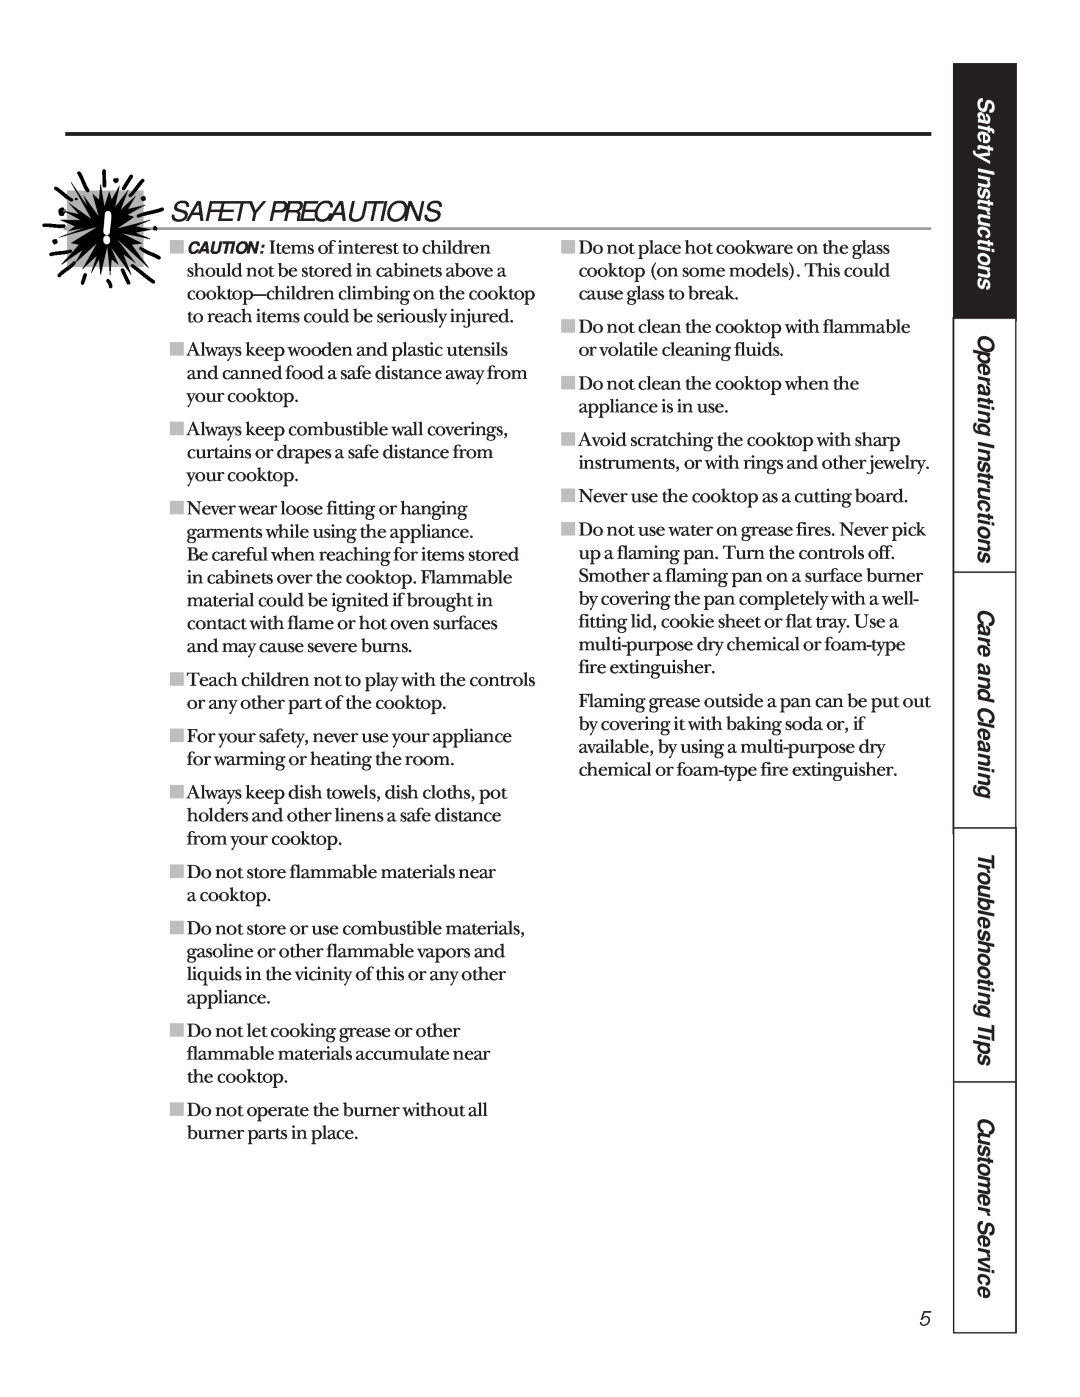 GE JGP960, JPG930, JPG336, JPG636, JPG326, JGP626 Safety Precautions, Do not store flammable materials near a cooktop 